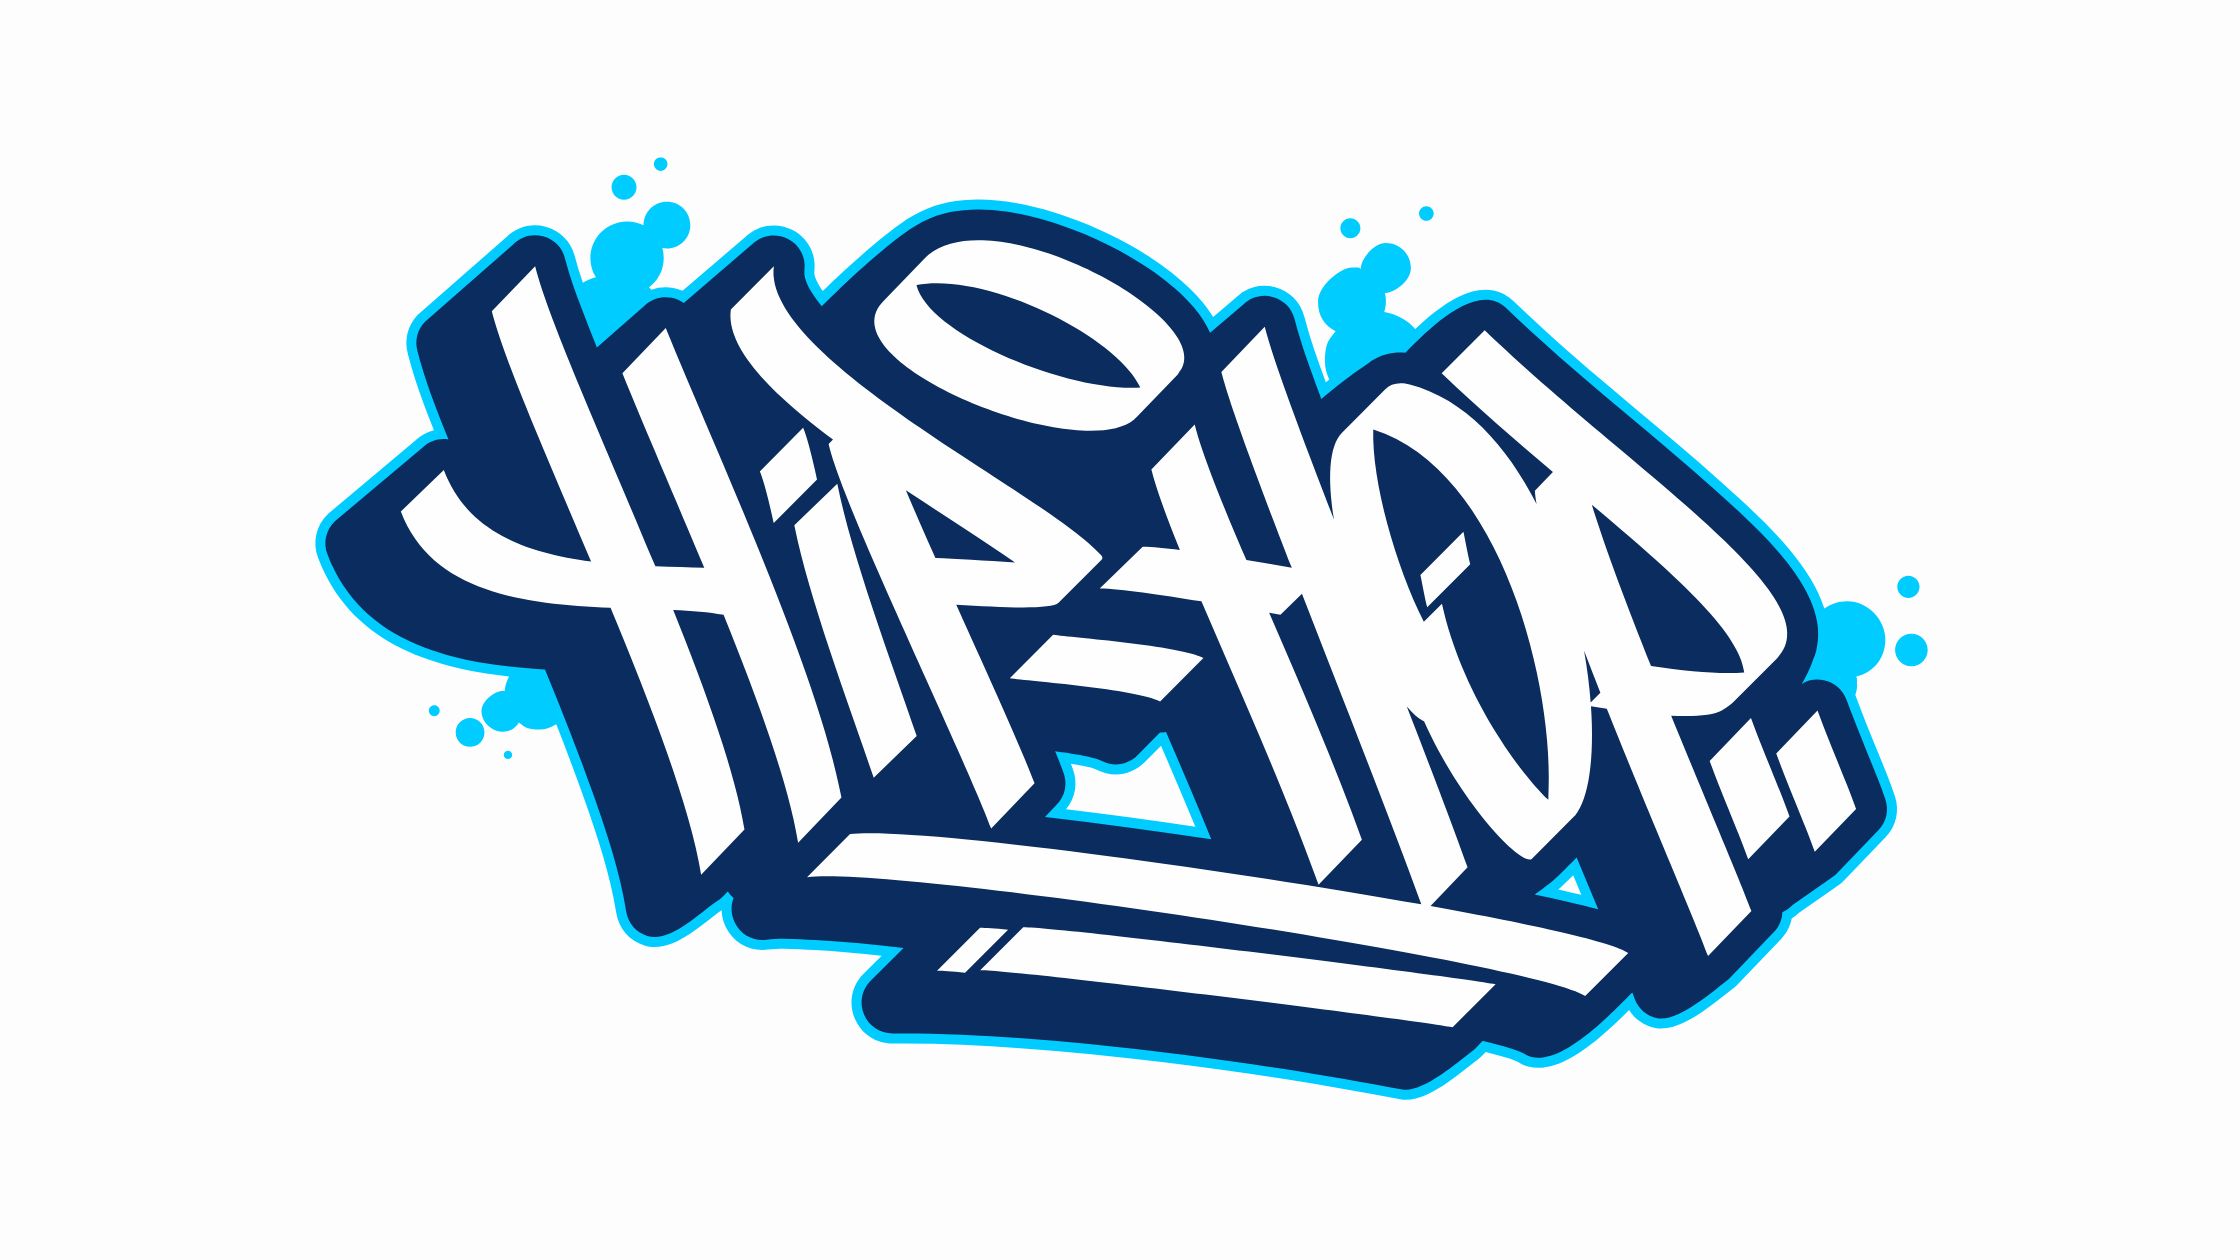 hip hop written in stylized graffiti